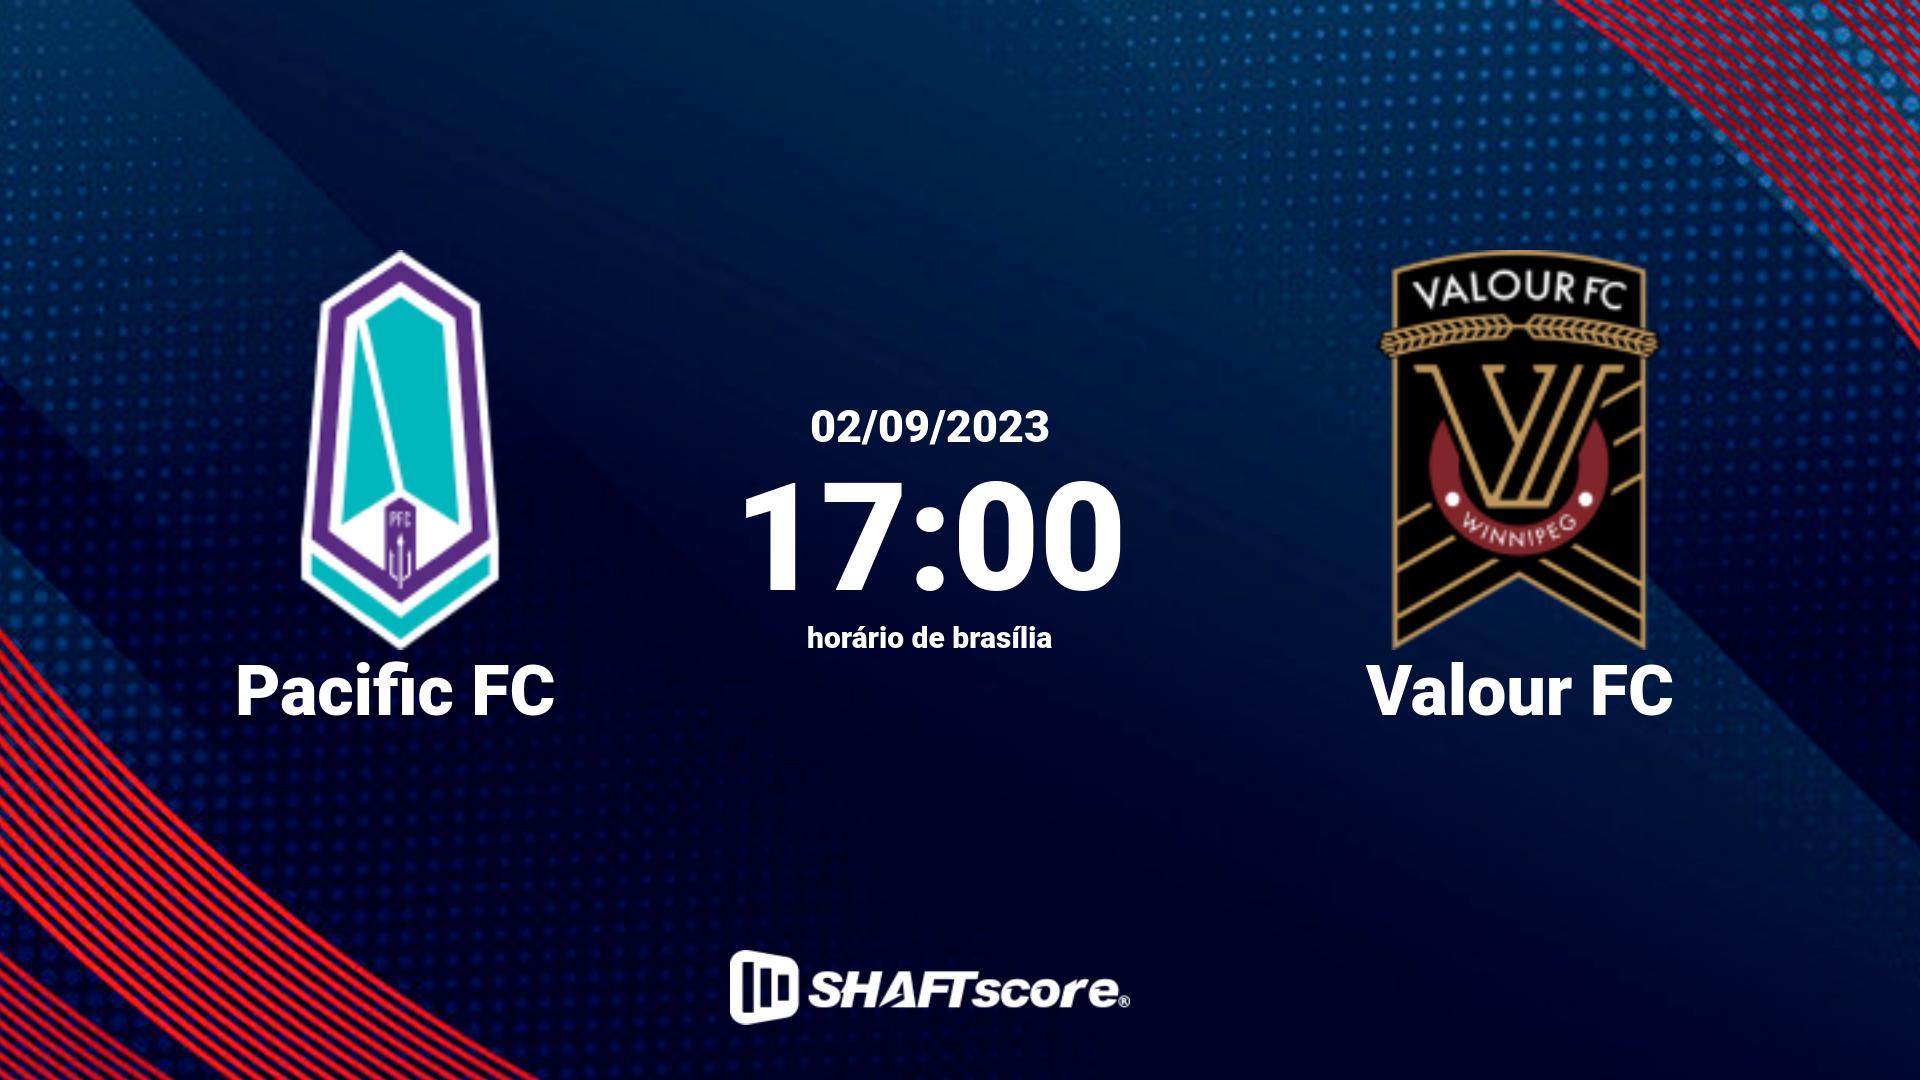 Estatísticas do jogo Pacific FC vs Valour FC 02.09 17:00